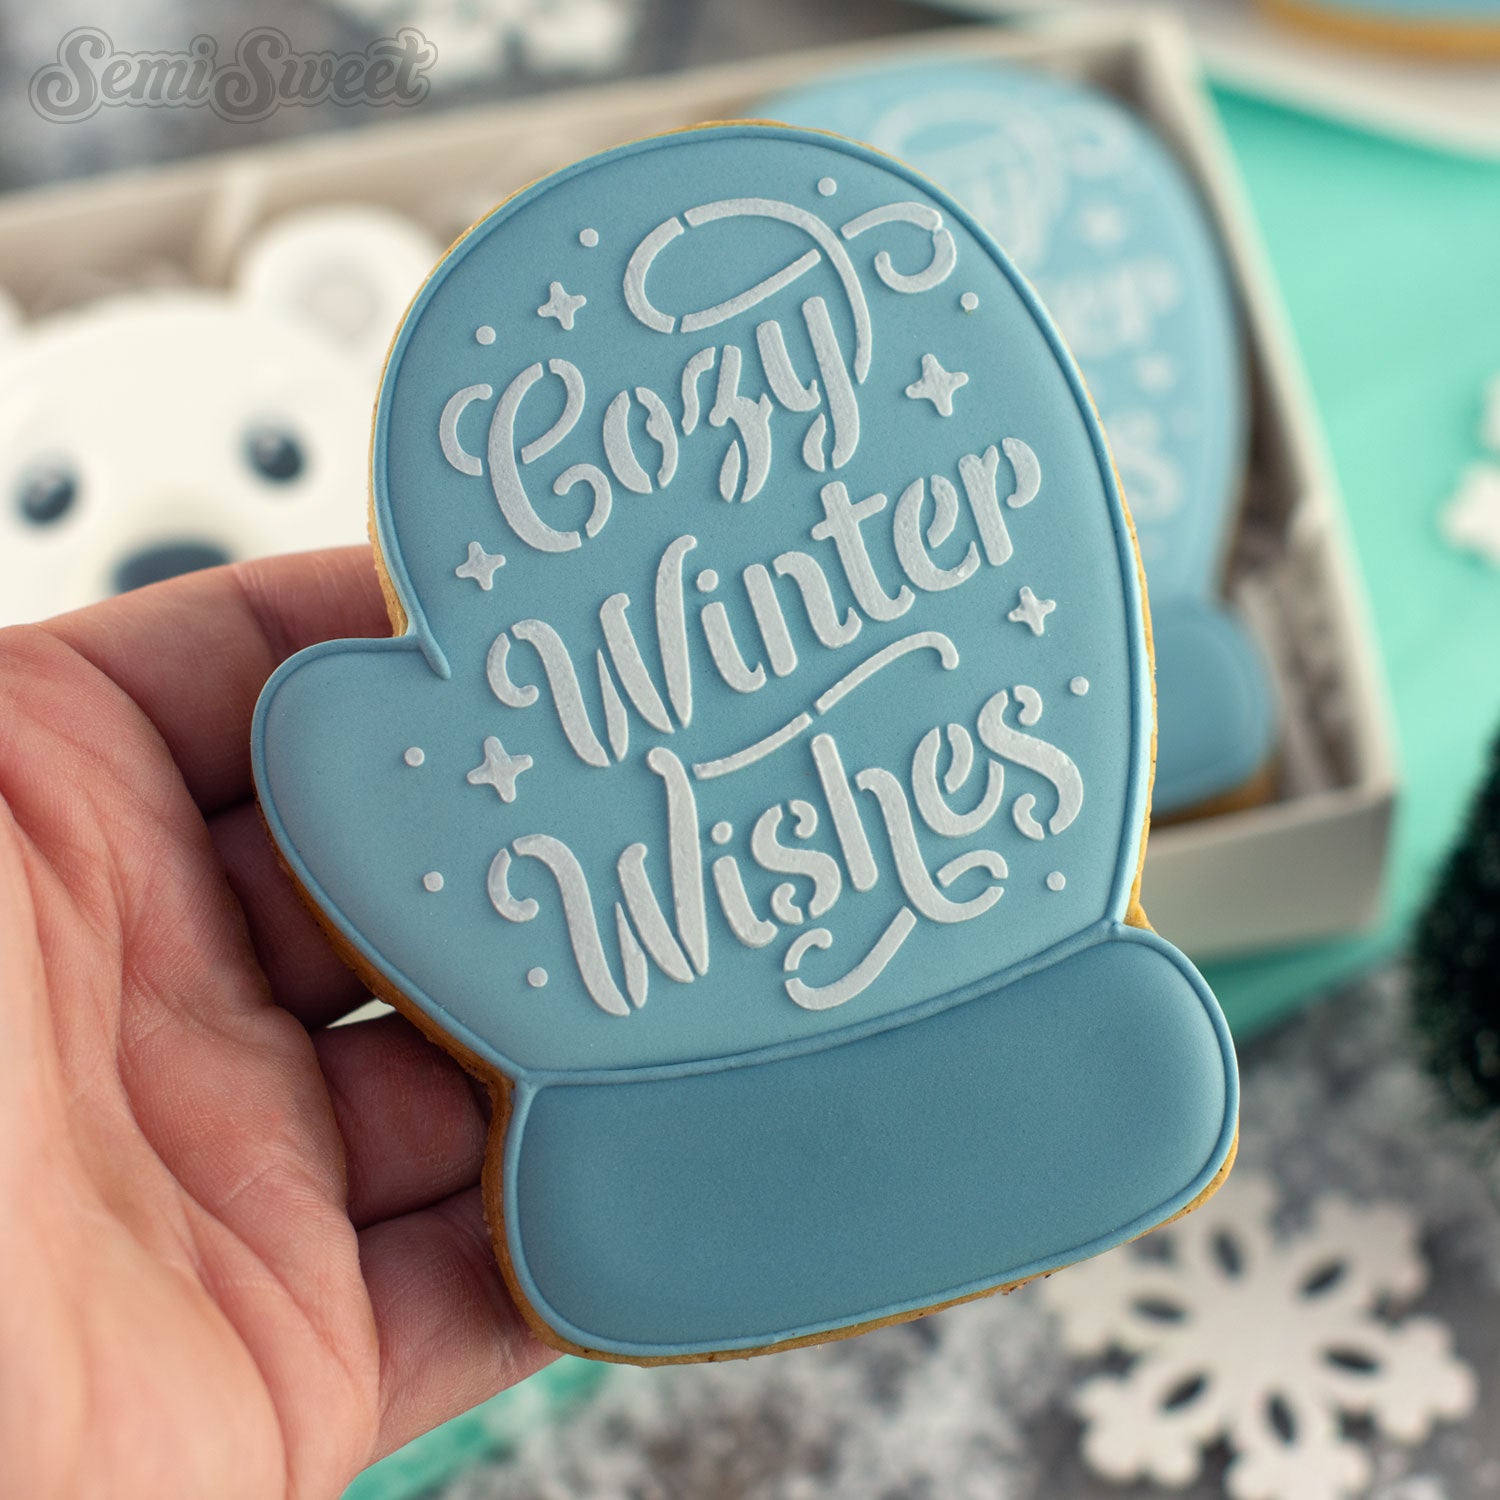 Cozy Winter Wishes Mitten Cutter & Stencil Bundle